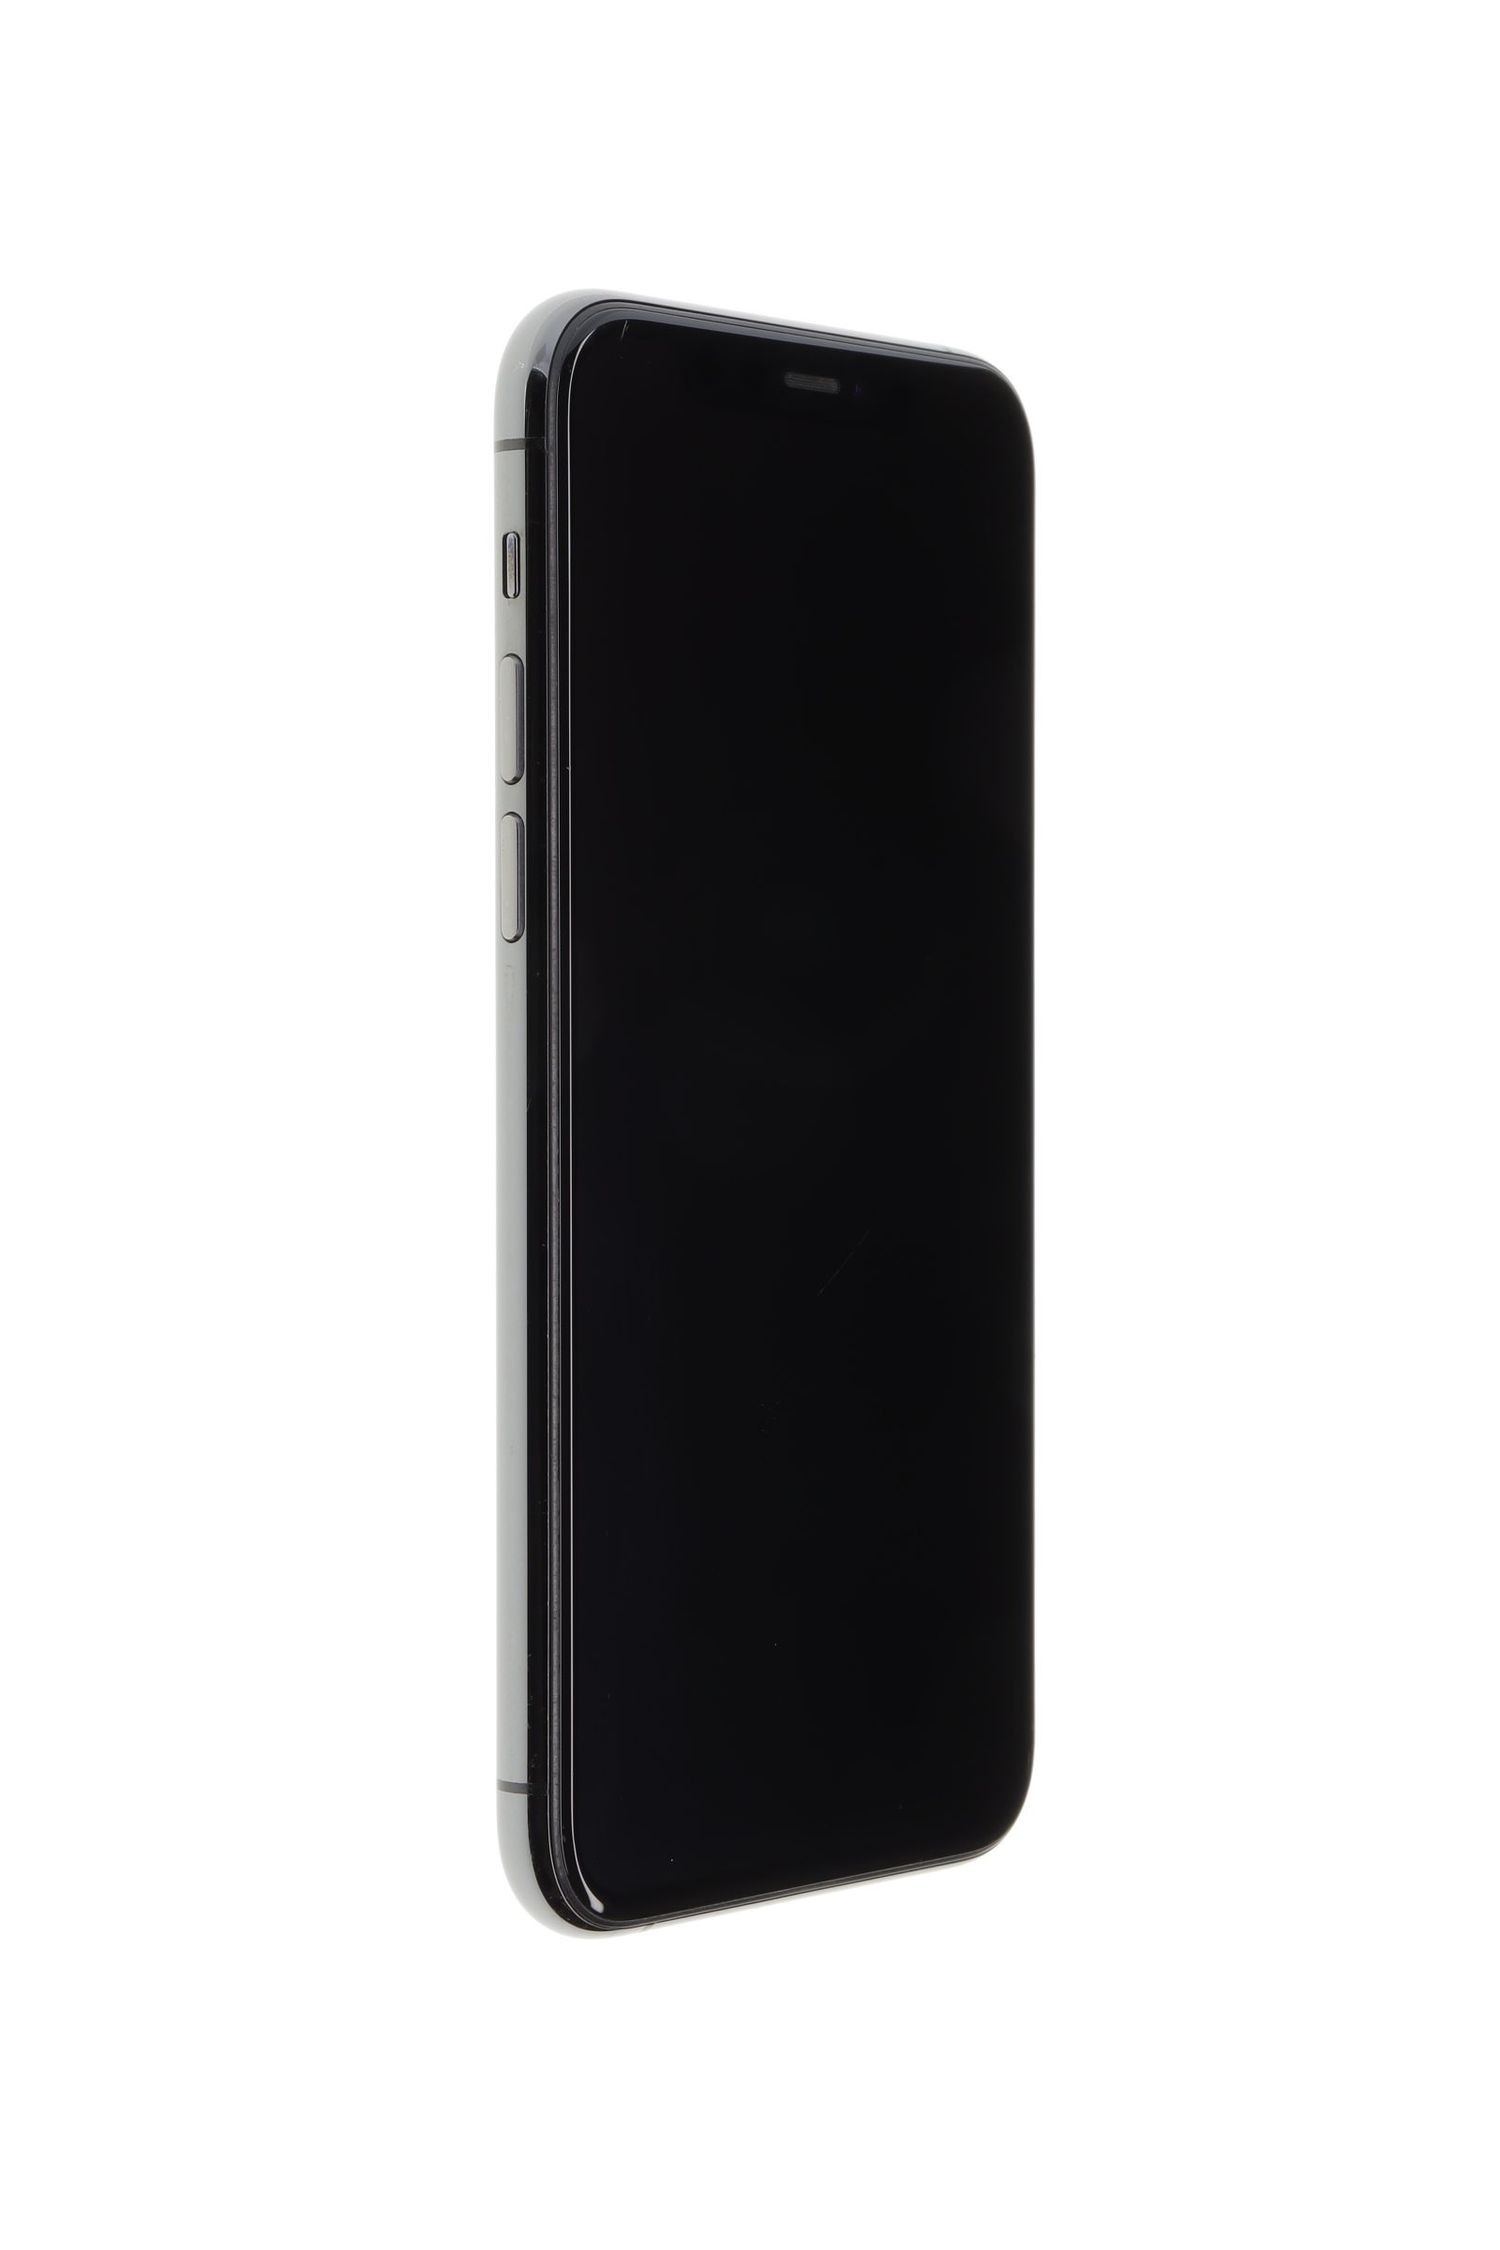 Κινητό τηλέφωνο Apple iPhone 11 Pro, Space Gray, 64 GB, Excelent